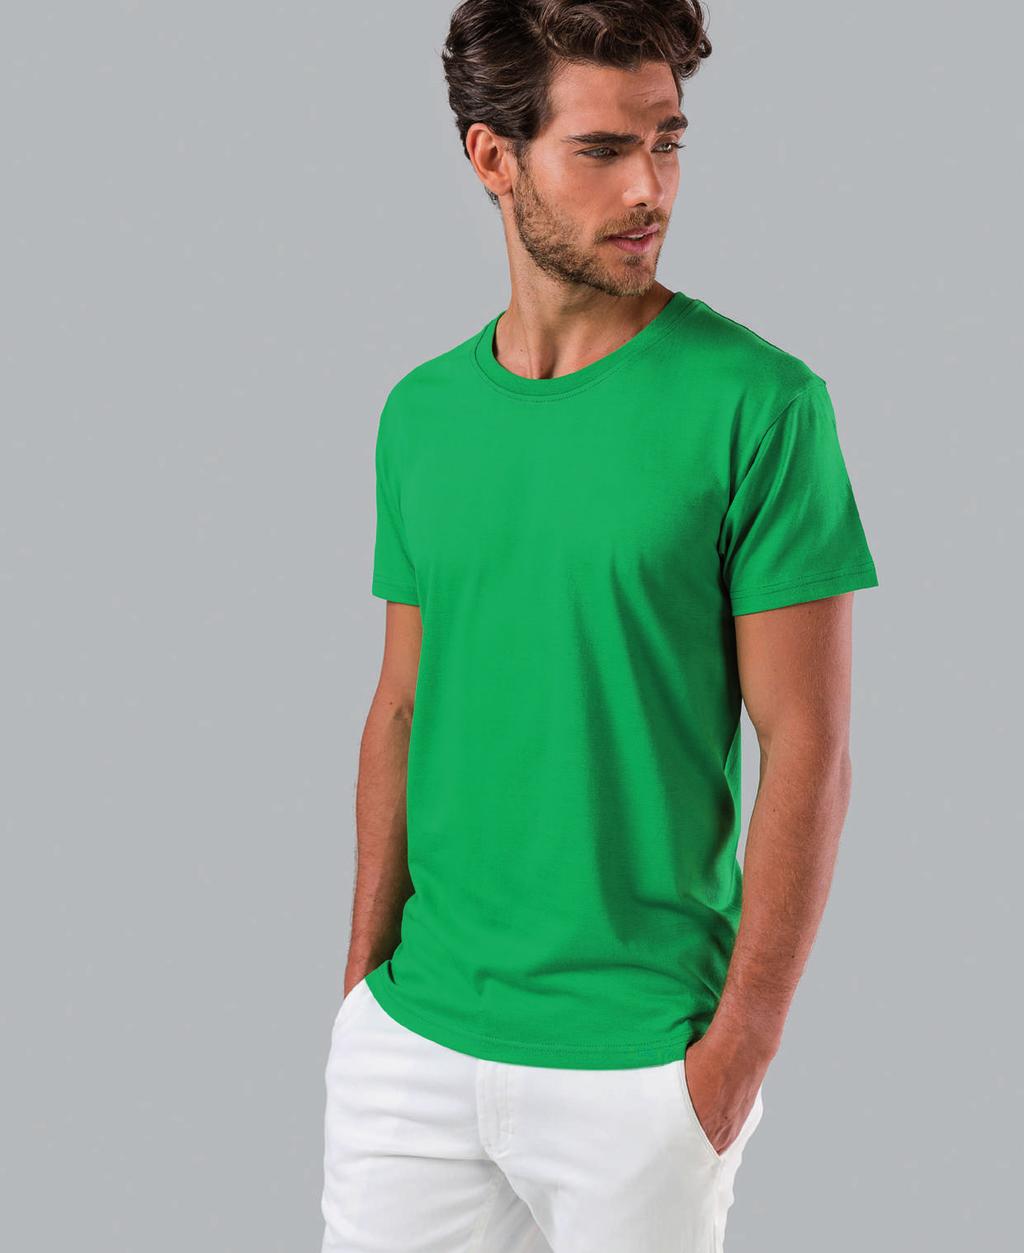 NKR t-shirt para homem 190 g/m 2 TH Clothes reverte parte das vendas da gama NKR a favor da MI.